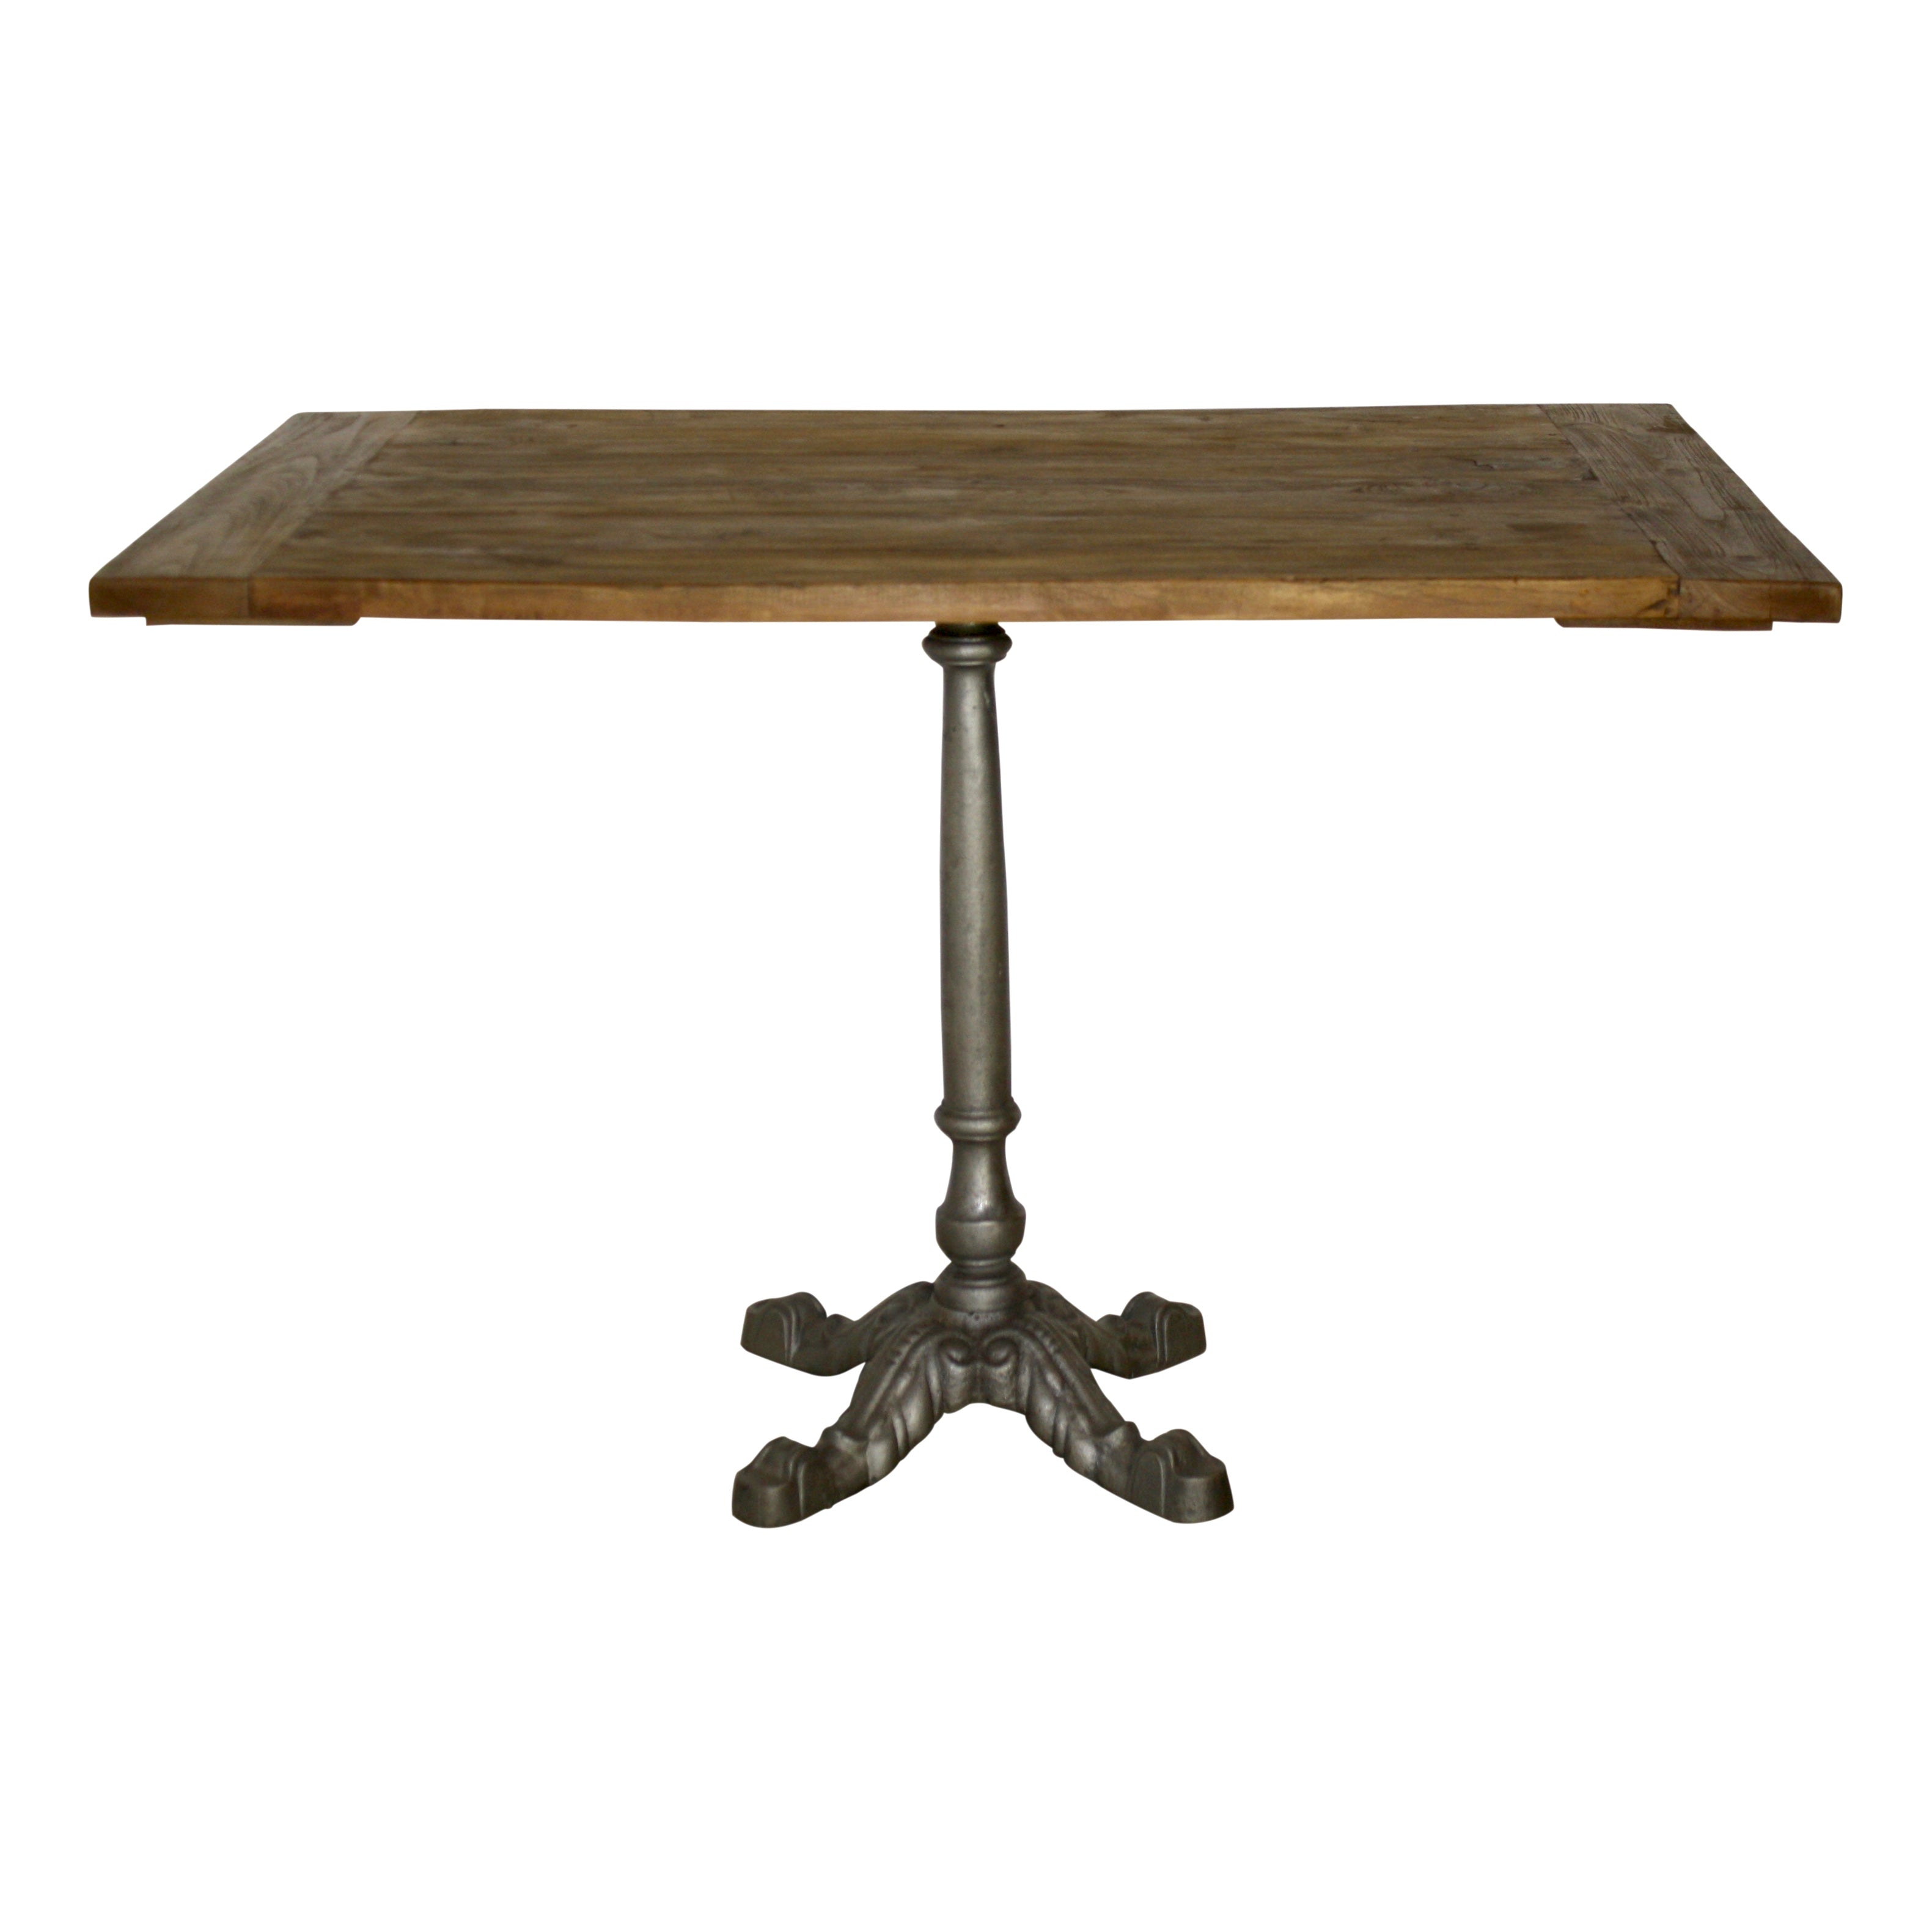 Rectangular Teak Table with Metal Pedestal Base